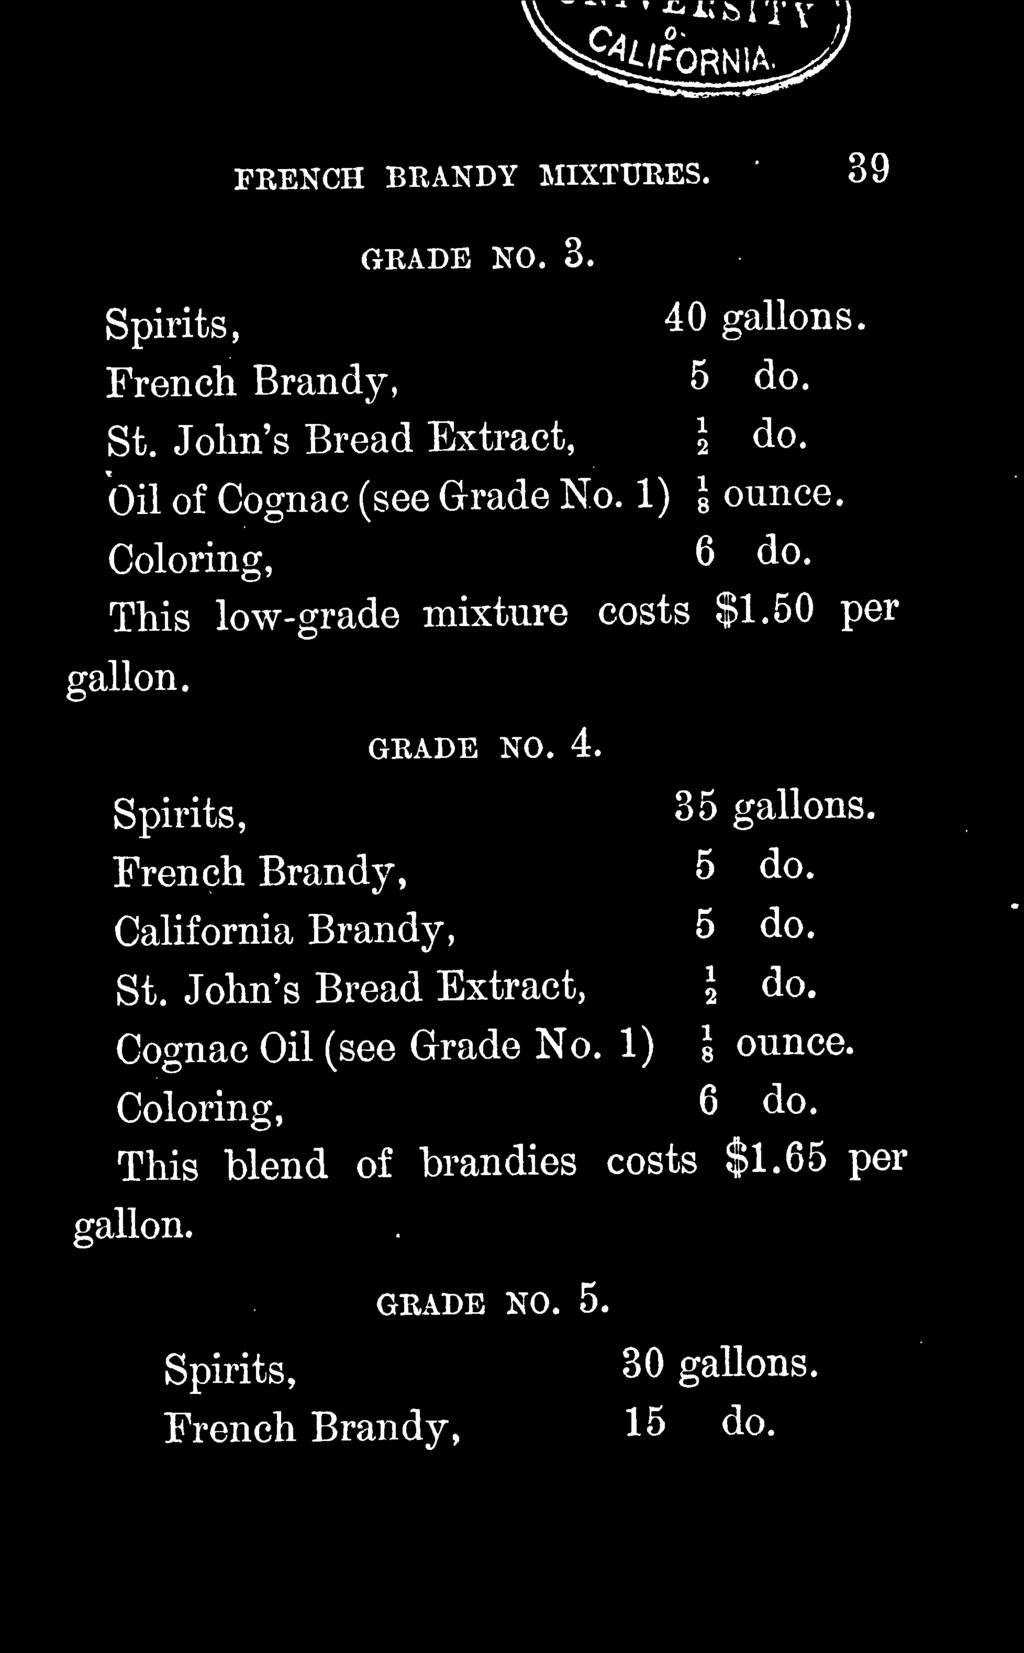 John's Bread Extract, 2 do. Cognac Oil (see Grade No. 1) \ ounce.